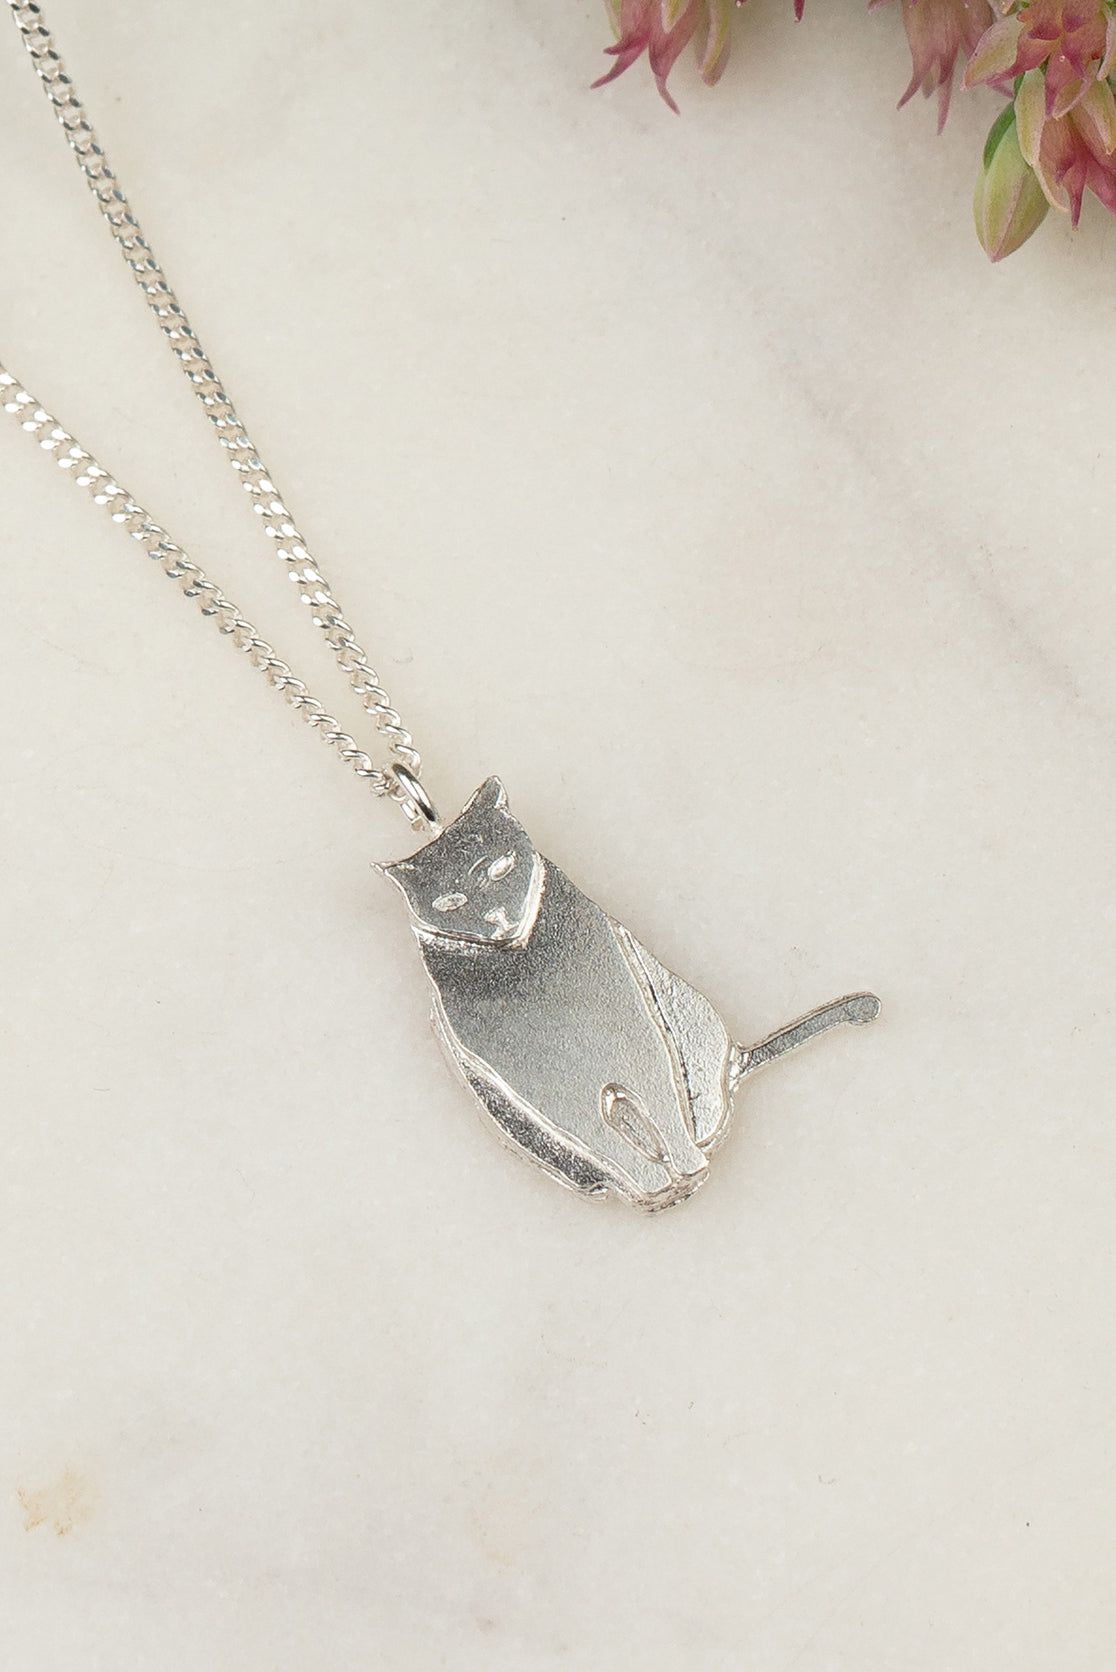 Curious Cat Face Necklace, Handmade Silver Cat Pendant | Paula Wilkinson  Jewellery